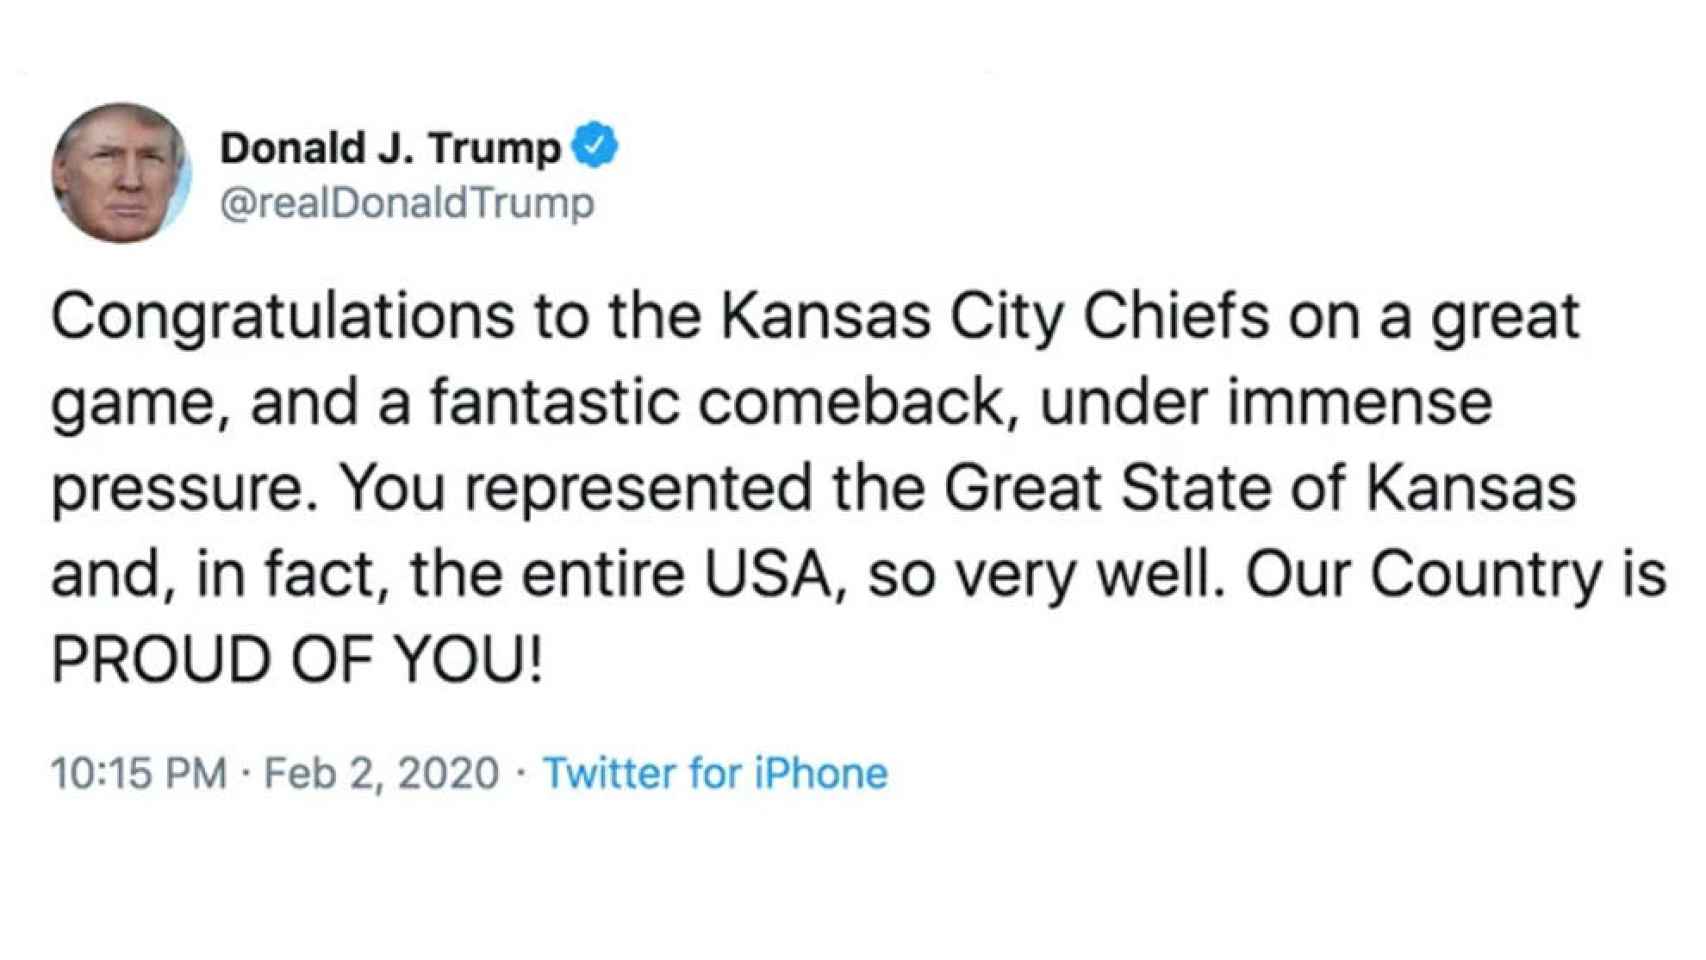 Tuit de Donald Trump felicitando al estado de Kansas